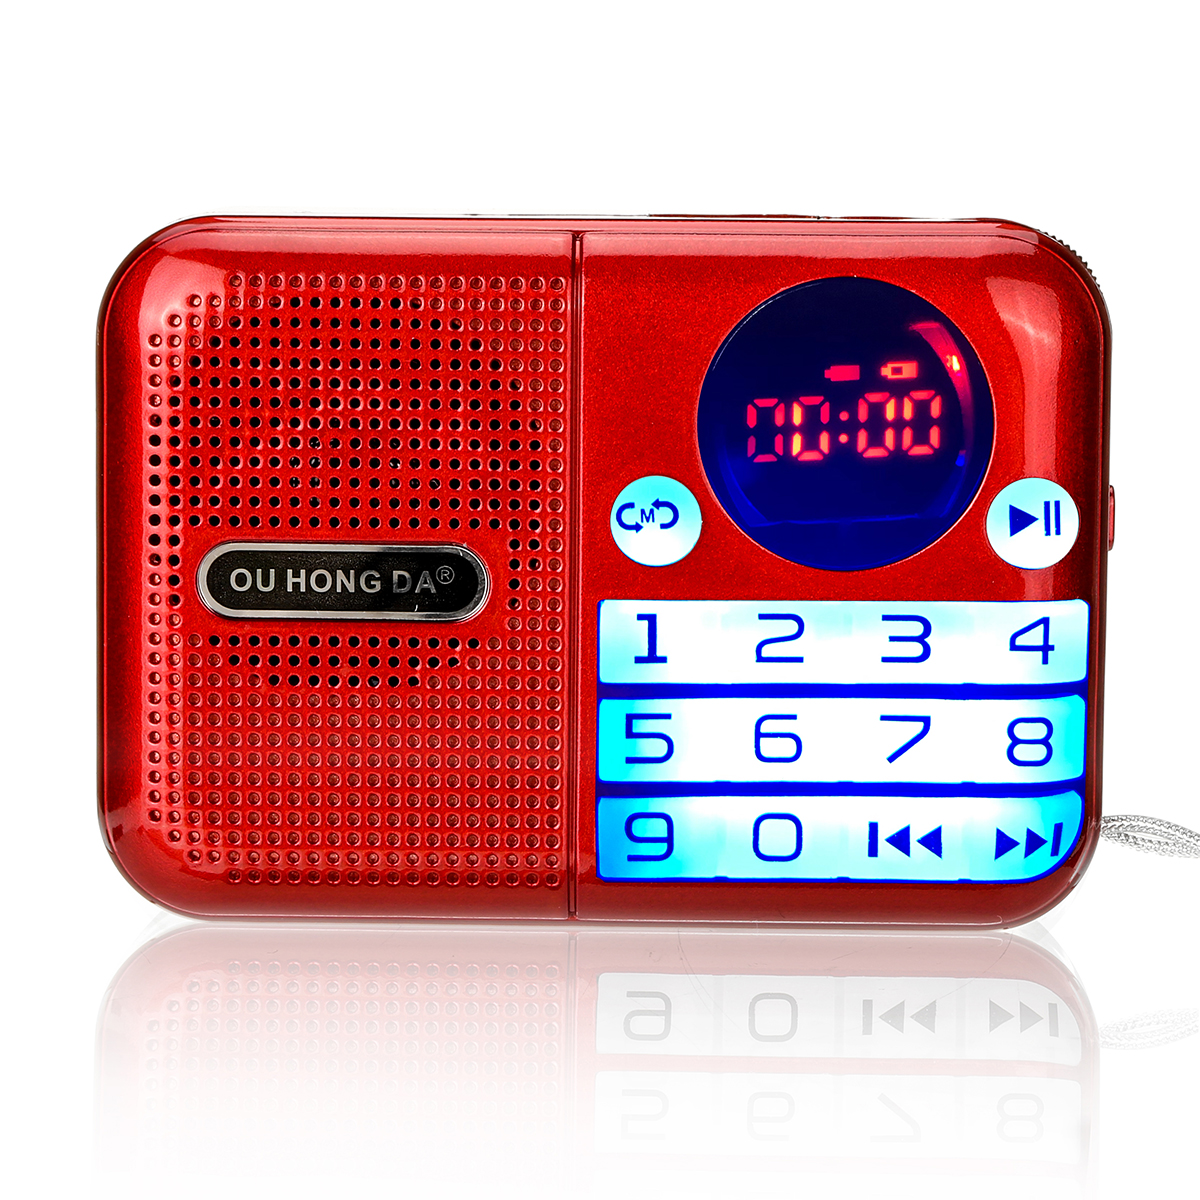 

Портативный FM Радио 70-108 МГц Выключение памяти Цифровой Дисплей TF Карта USB музыкальный плеер Динамик